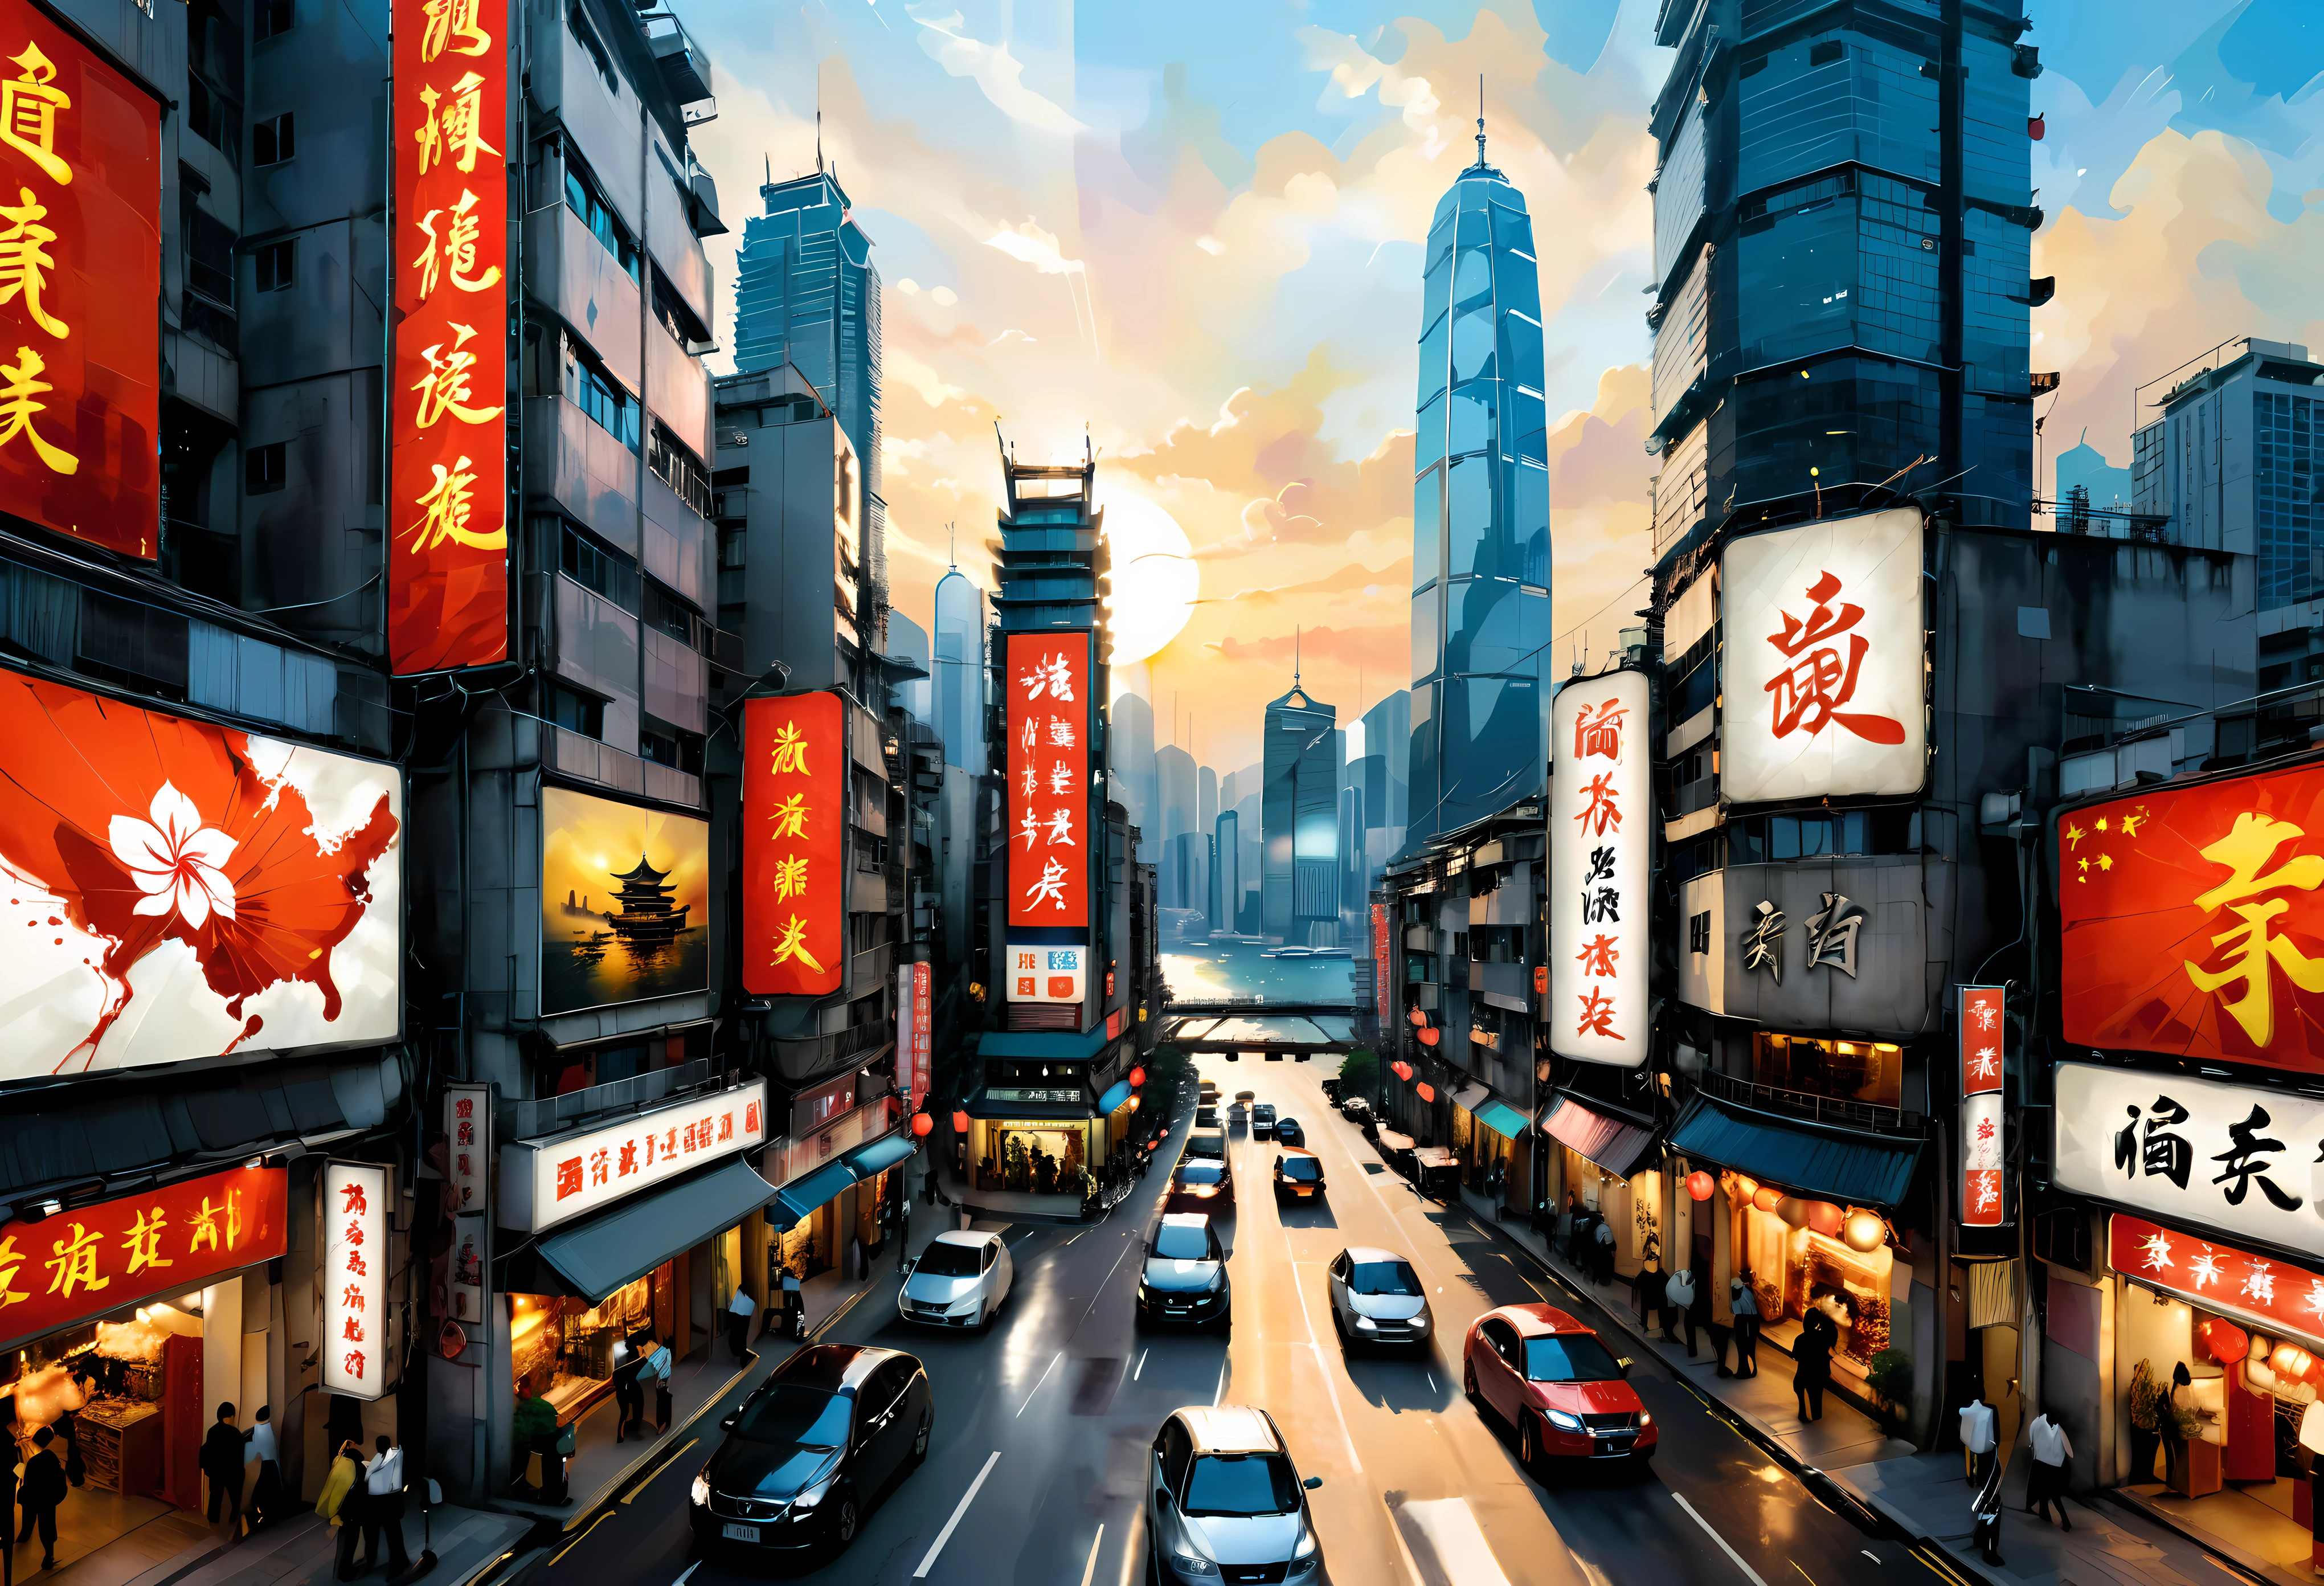 ((吳冠中風格繪畫):1.2),((中国水墨画):1.2),((西畫觀念):1.2),((傳統主題的現代詮釋)1.1), ((通过色彩和线条创造独特的视觉效果):1.1),((鸟瞰图):1.3) | A combination of Chinese ink art and Western painting of 鸟瞰图 of Hong Kong modern skyline, (最好的品質, 4k, 高解析度, 傑作:1.2), 超詳細, (實際的, photo實際的:1.37), 中国水墨风格: 細膩的筆觸和墨水, 西洋畫風格: 充滿活力的色彩和筆觸, 香港天際線的標誌性摩天大樓, 熙熙攘攘的城市街道上擠滿了人和汽車, 沐浴在金色陽光下的壯麗維多利亞港, 傳統的中國船隻在港口航行, 霓虹灯照亮夜空, 傳統與現代建築的融合, 詳細說明街道標誌和廣告看板的中國傳統書法, 服裝時尚融合中西文化元素, 路牌和店名中英文混合, 從高處的戲劇性視角展示城市的垂直度, 光與影的相互作用增強了繪畫的深度和維度, 混凝土的對比紋理, 玻璃, 和城市景觀中的自然, 巧妙融入代表幸運的中國符號和圖案, 繁榮, 和和諧, 身臨其境的體驗將觀眾帶入香港多元化和充滿活力的氛圍.